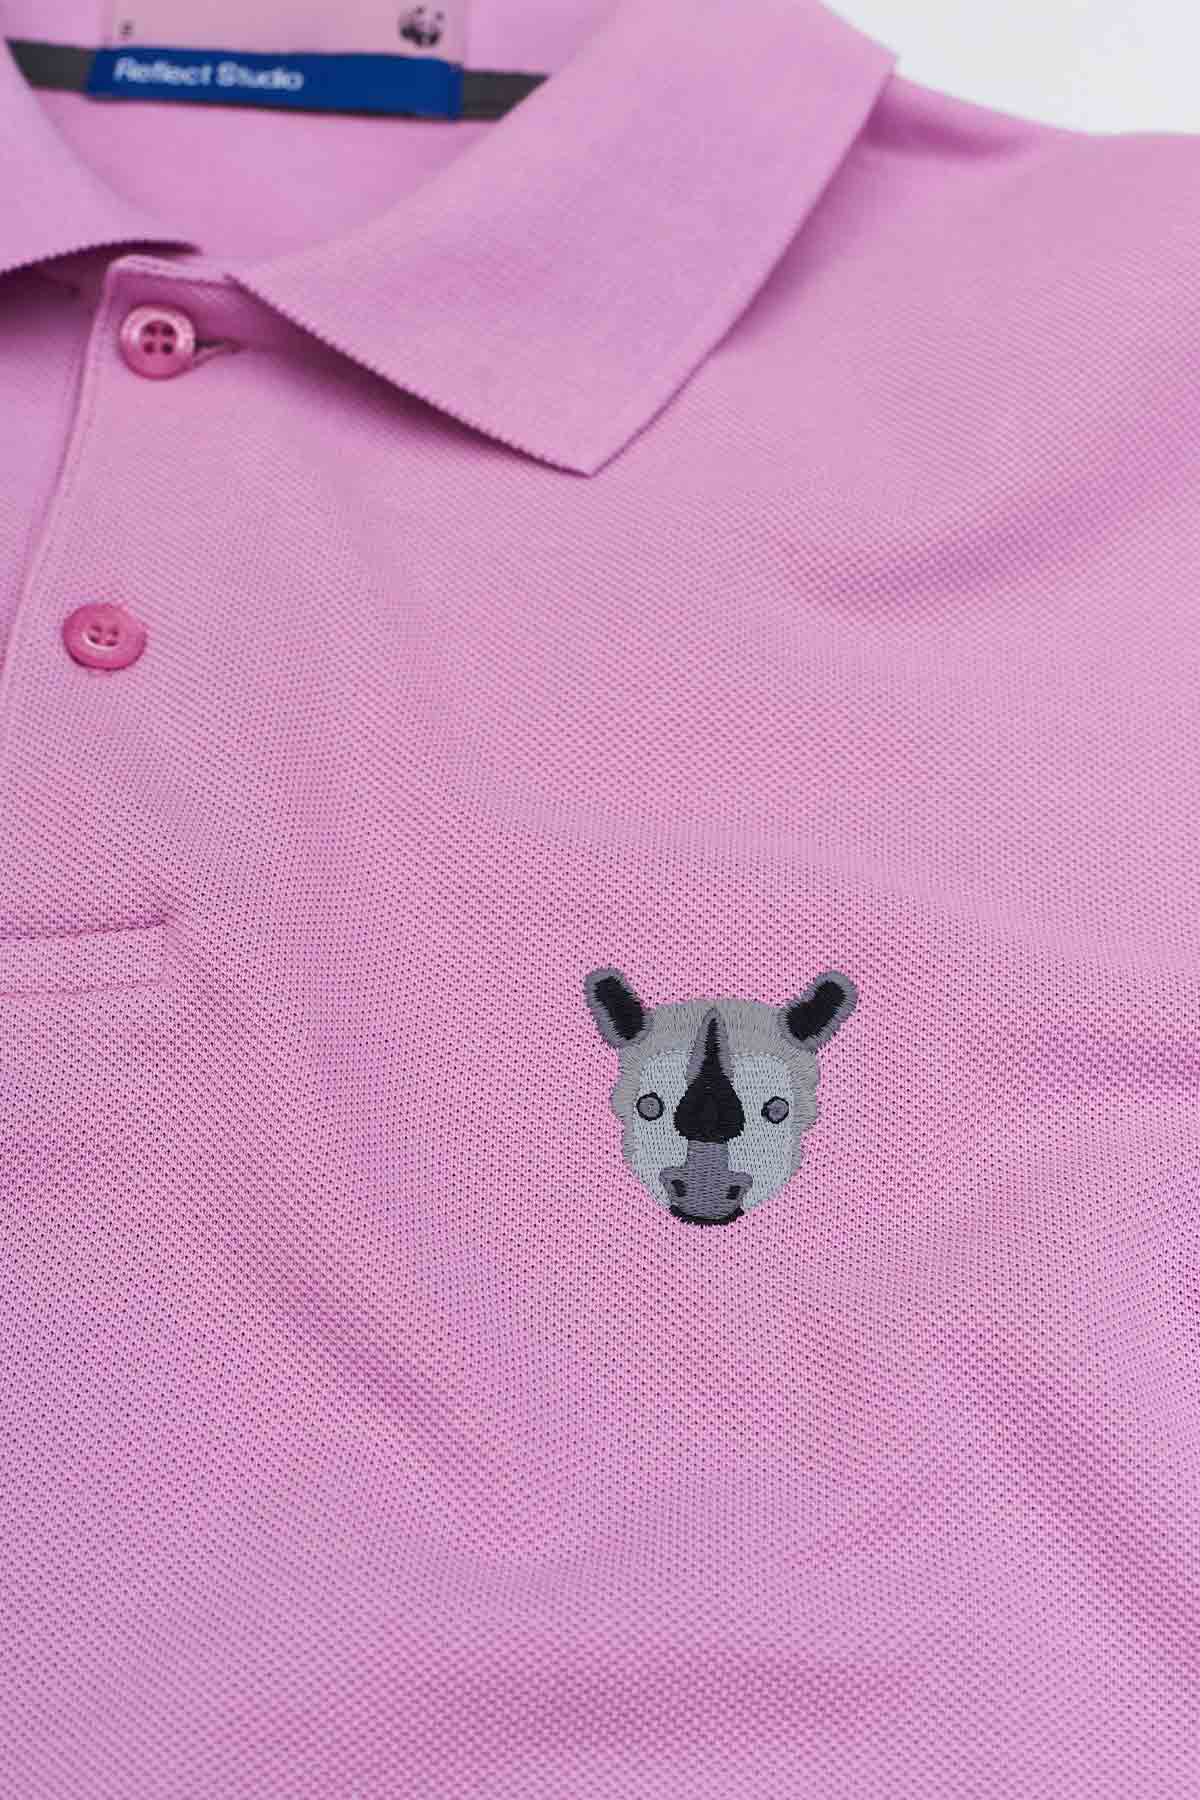 Polo Shirt // Rhino // Flieder